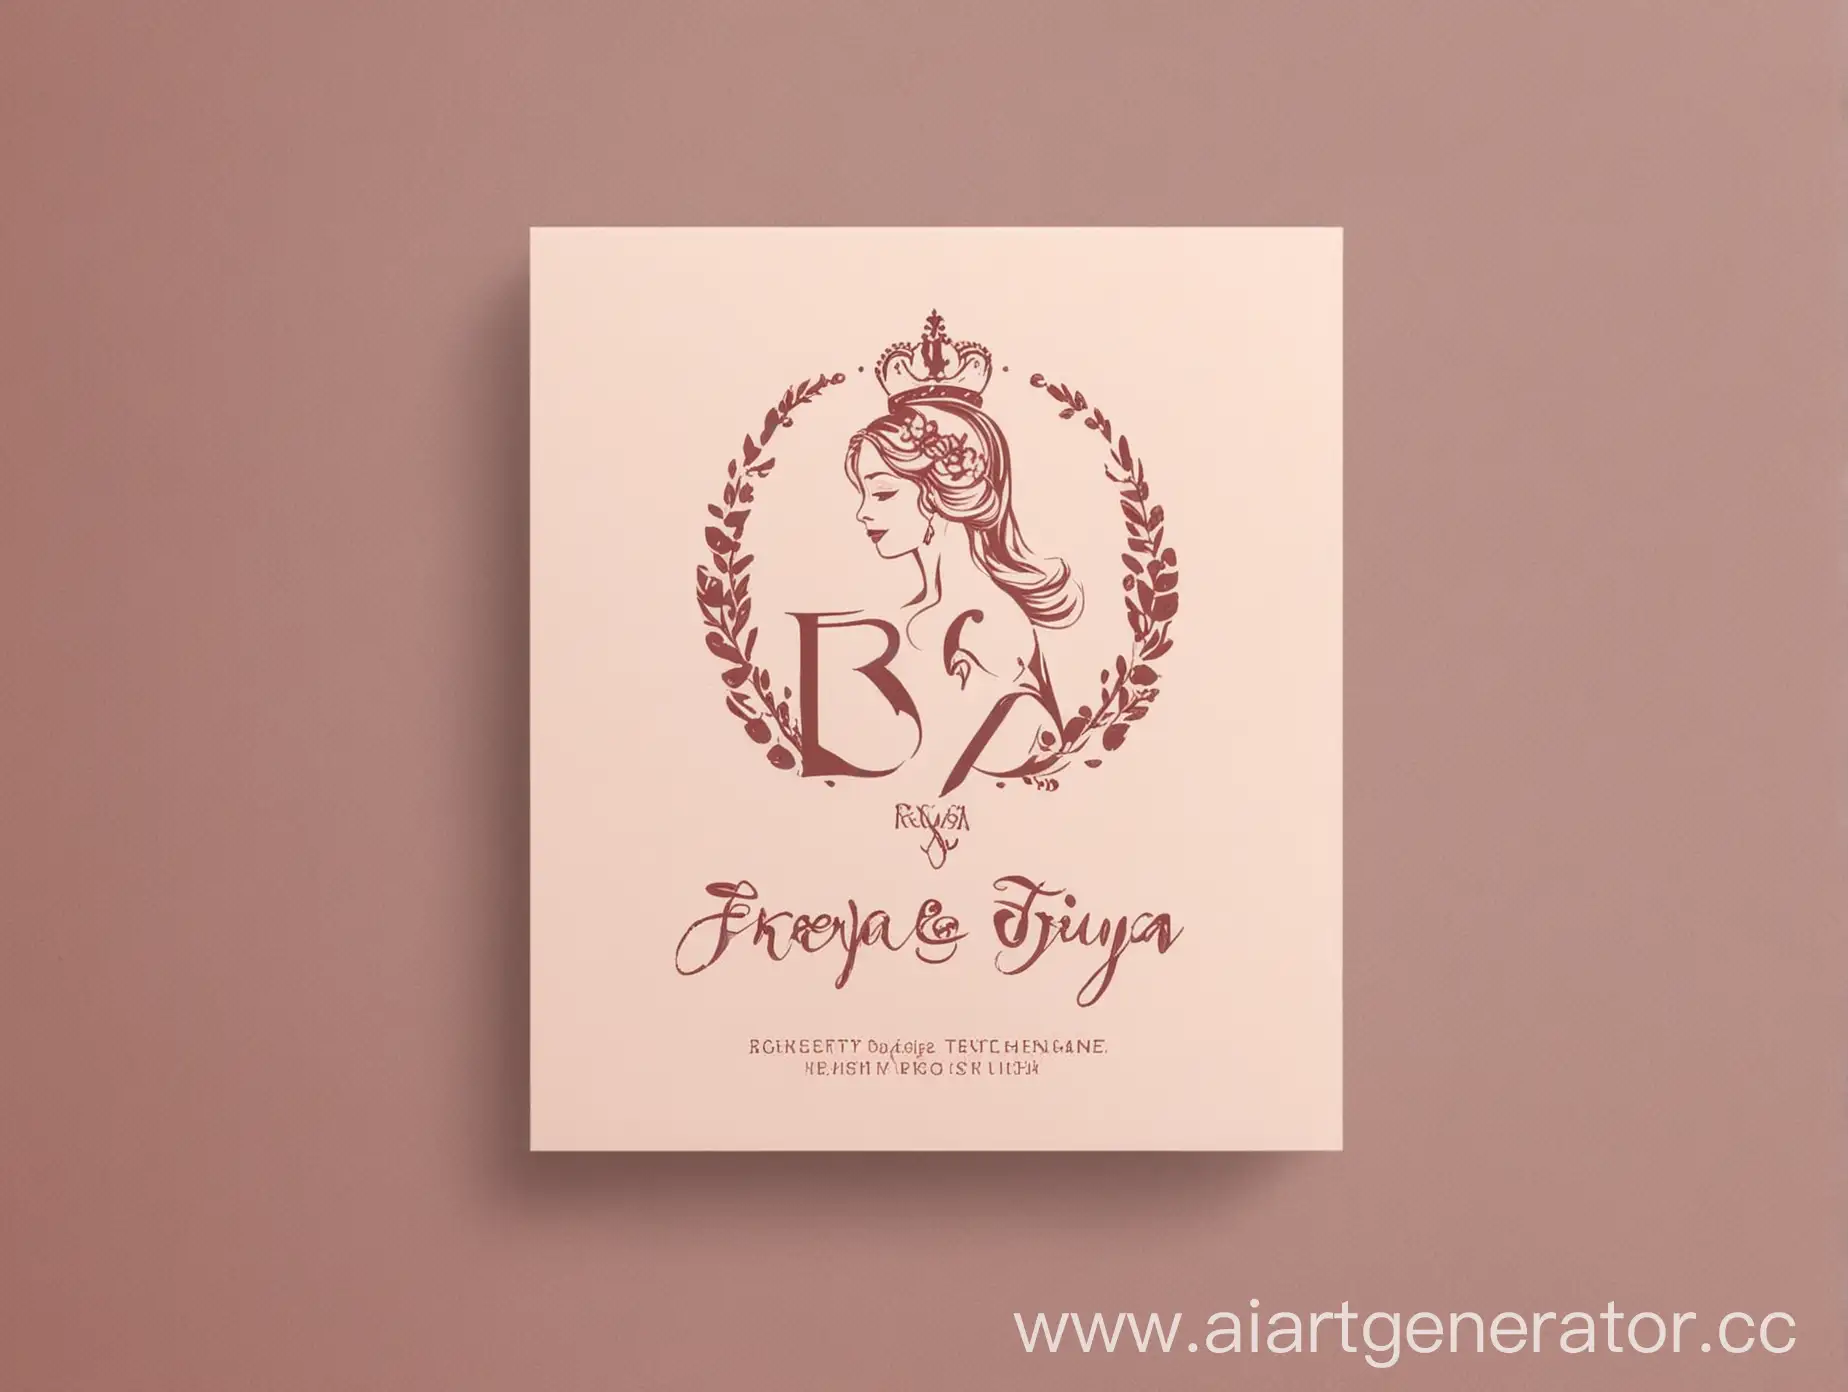 Изобрази простой логотип для салона красоты с название Freya для визитки, название Freya должно легко читаться